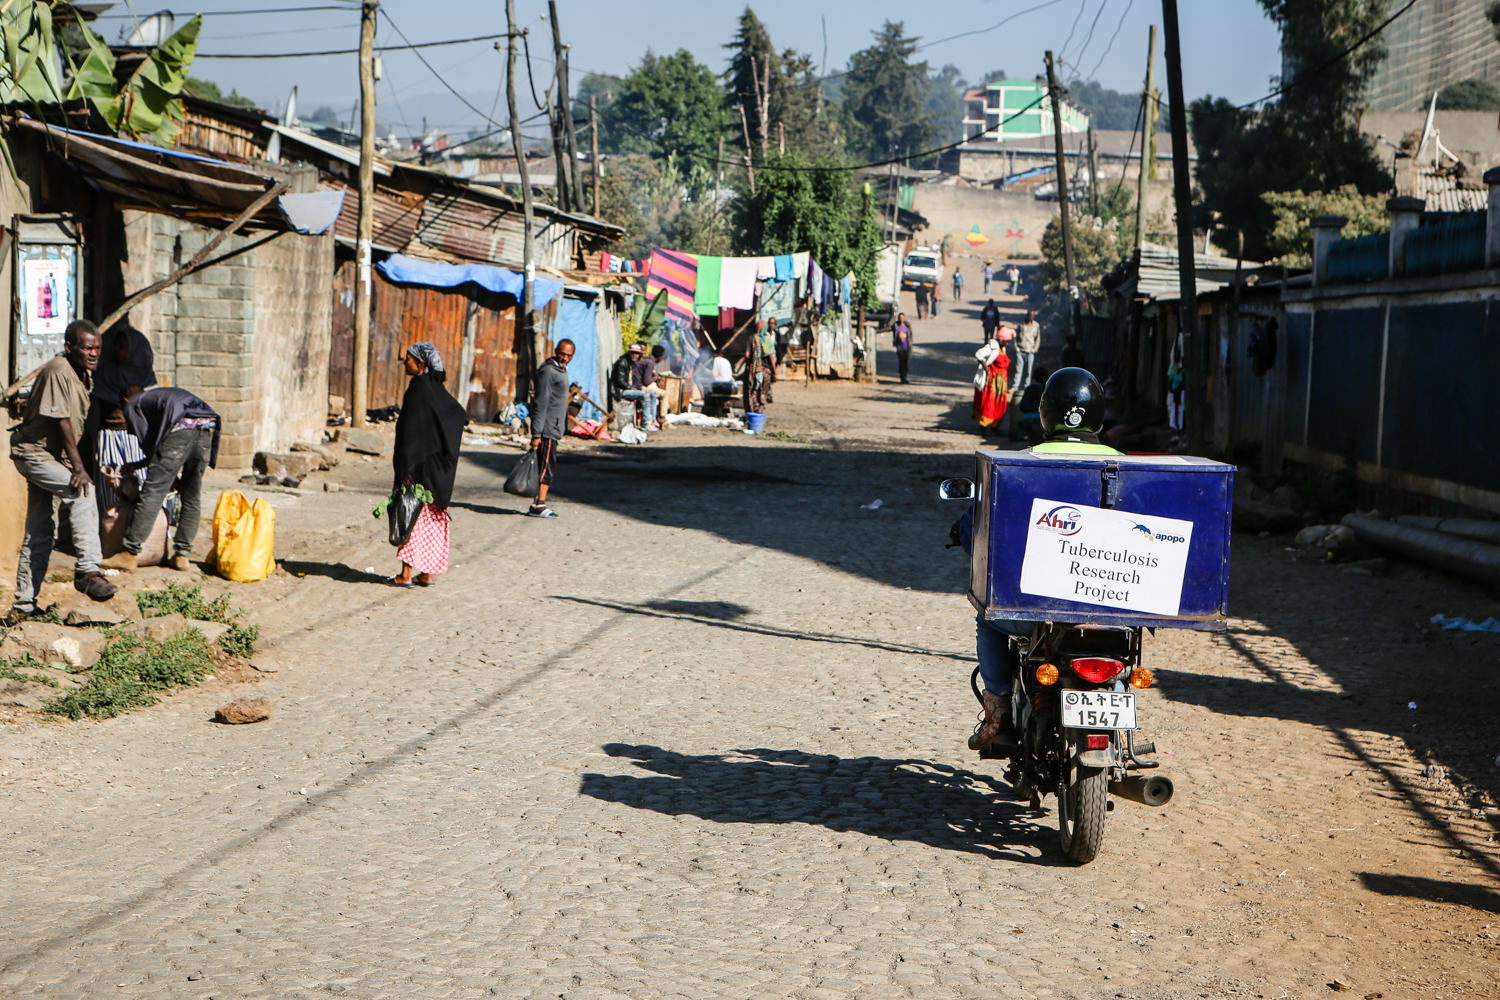 AHRI-APOPO Ethiopia tuberculosis sample collector drives through Addis Ababa